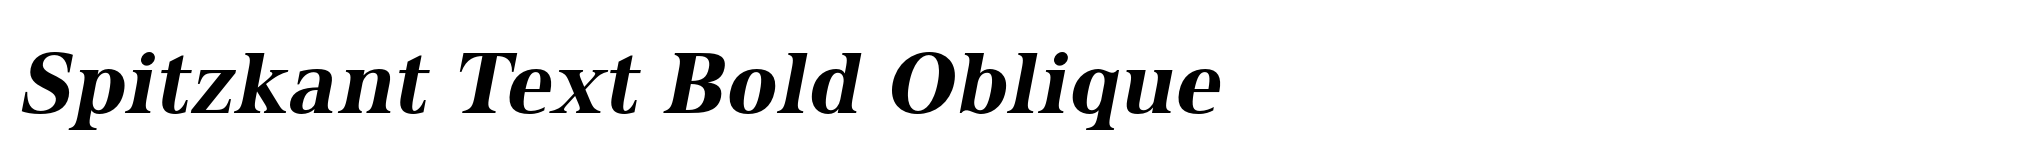 Spitzkant Text Bold Oblique image